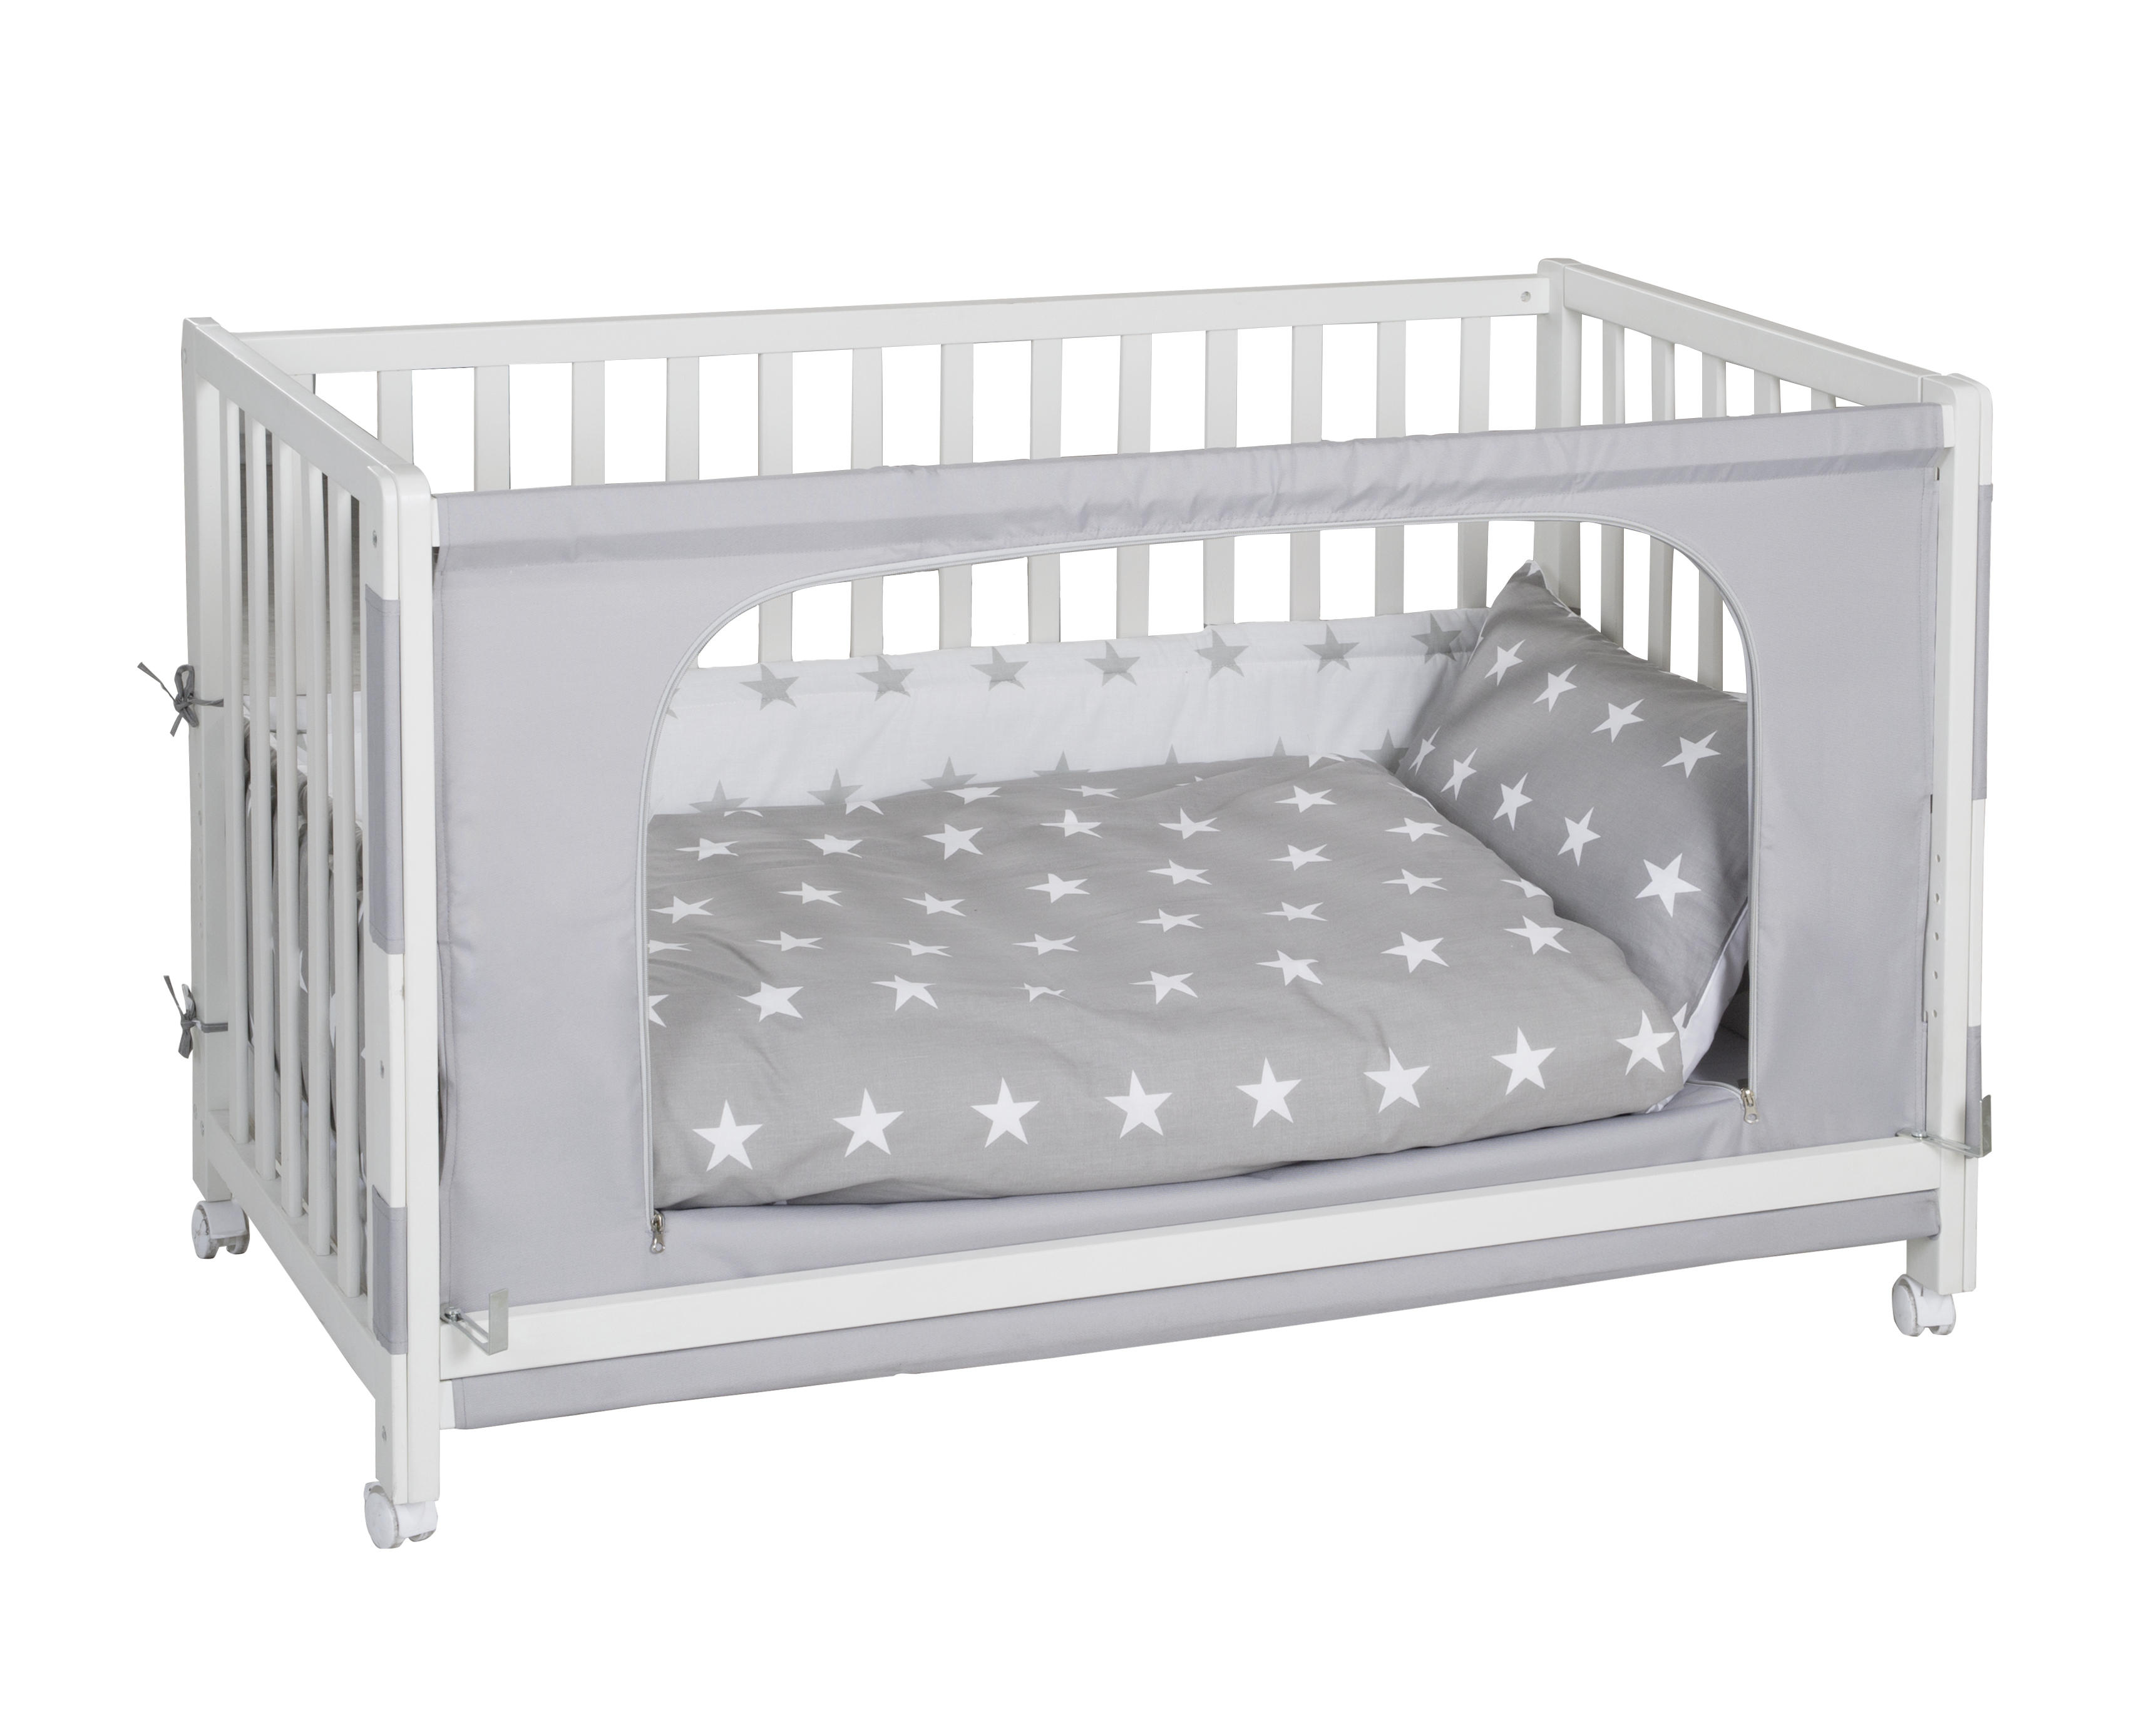 GITTERBETT-KOMPLETTSET Room Bed Little Stars   60/120 cm  - Weiß/Grau, Basics, Holz/Textil (60/120cm) - Roba